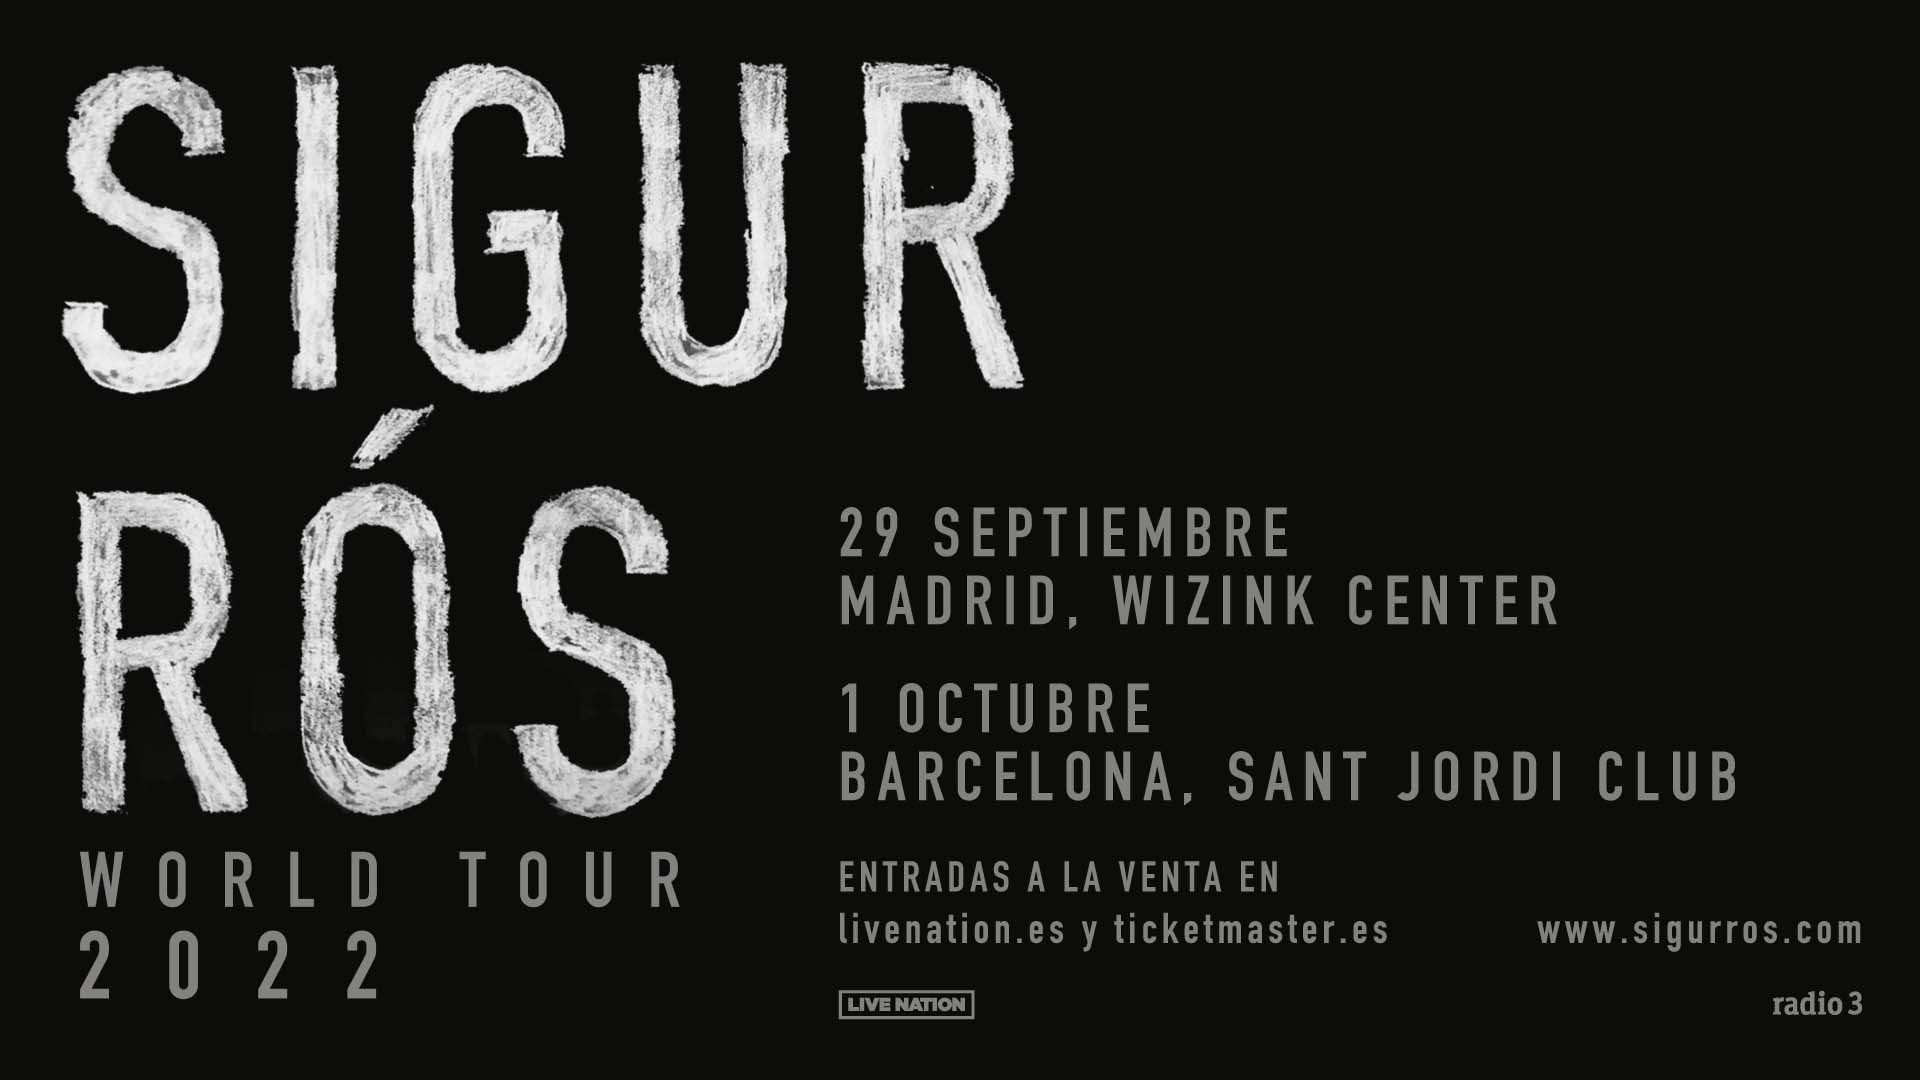 concierto_de_sigur_rós_en_madrid_|_world_tour_2022